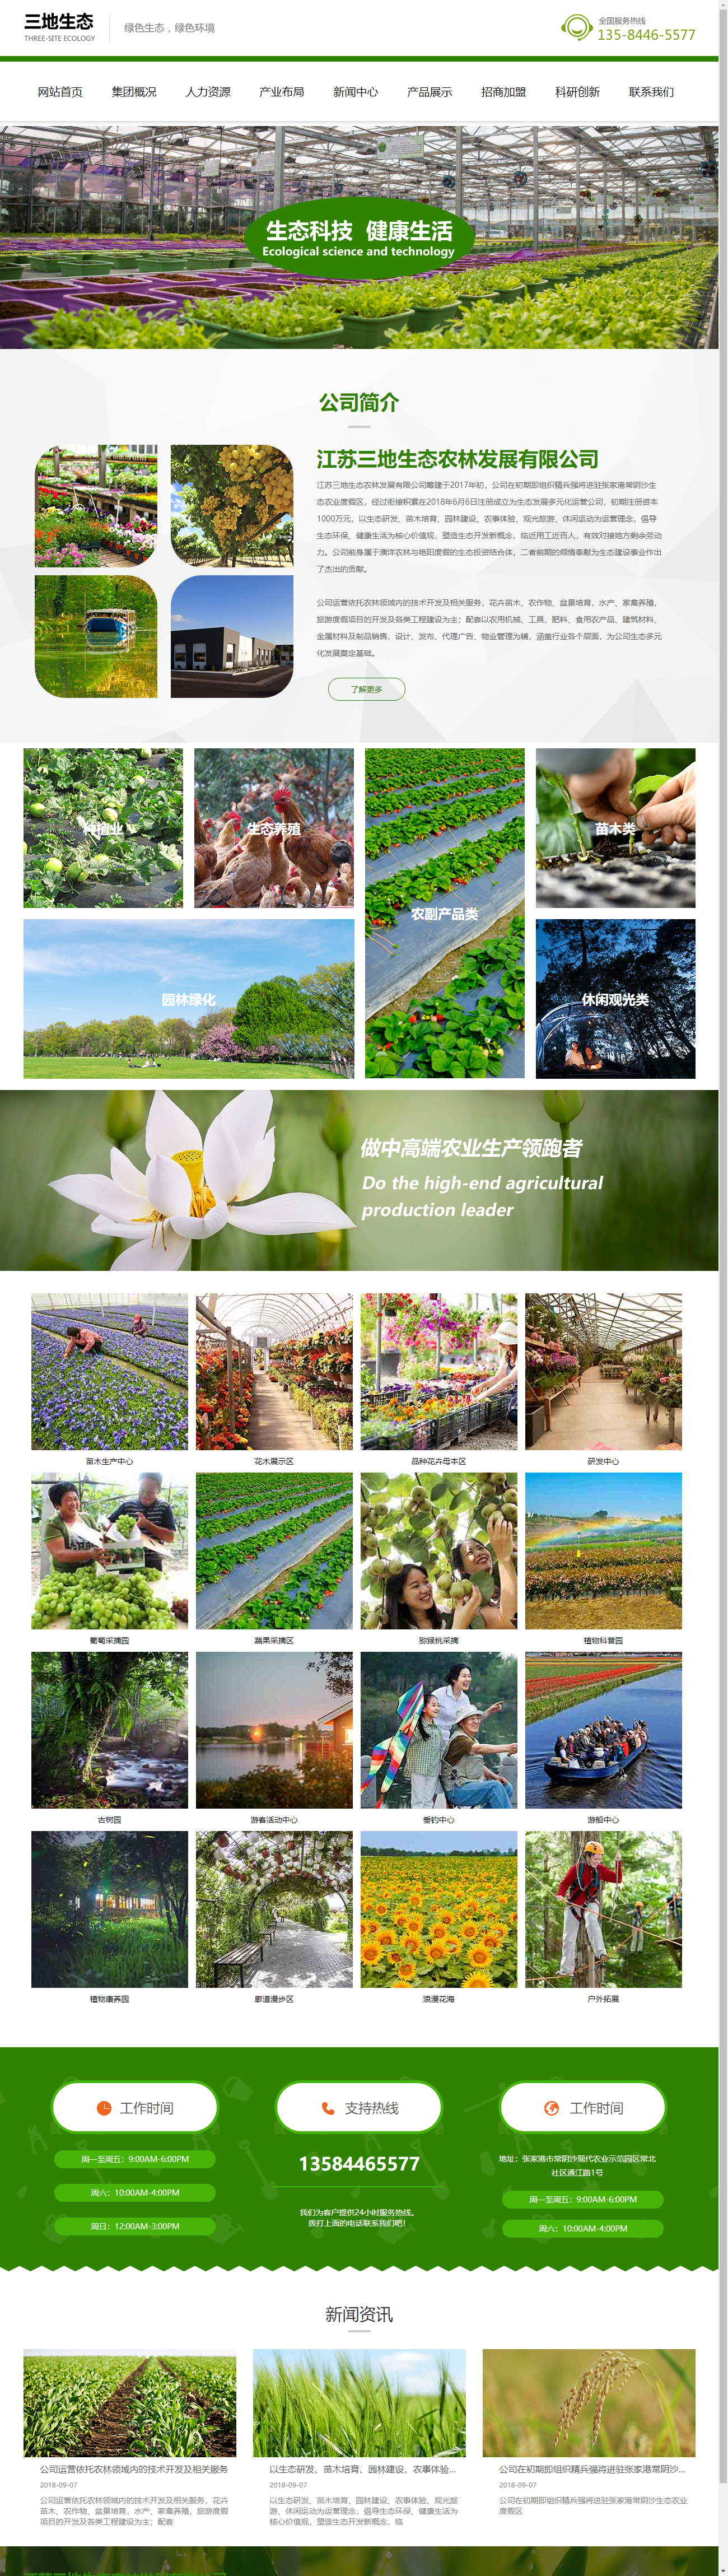 江苏三地生态农林发展有限公司网站案例